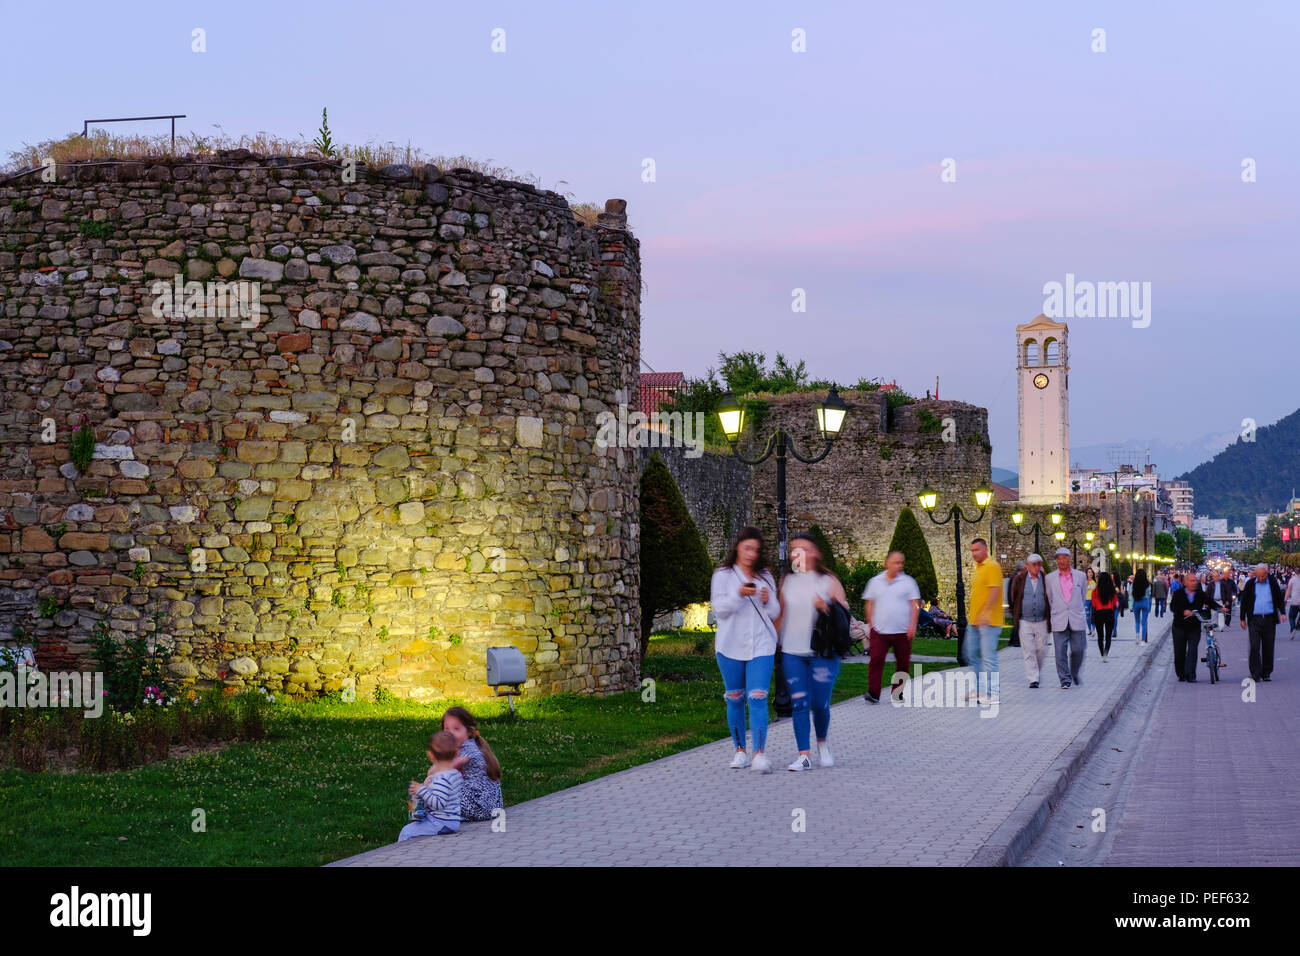 Festungsmauer und Turm, Dämmerung, Elbasan, Albanien Stockfoto